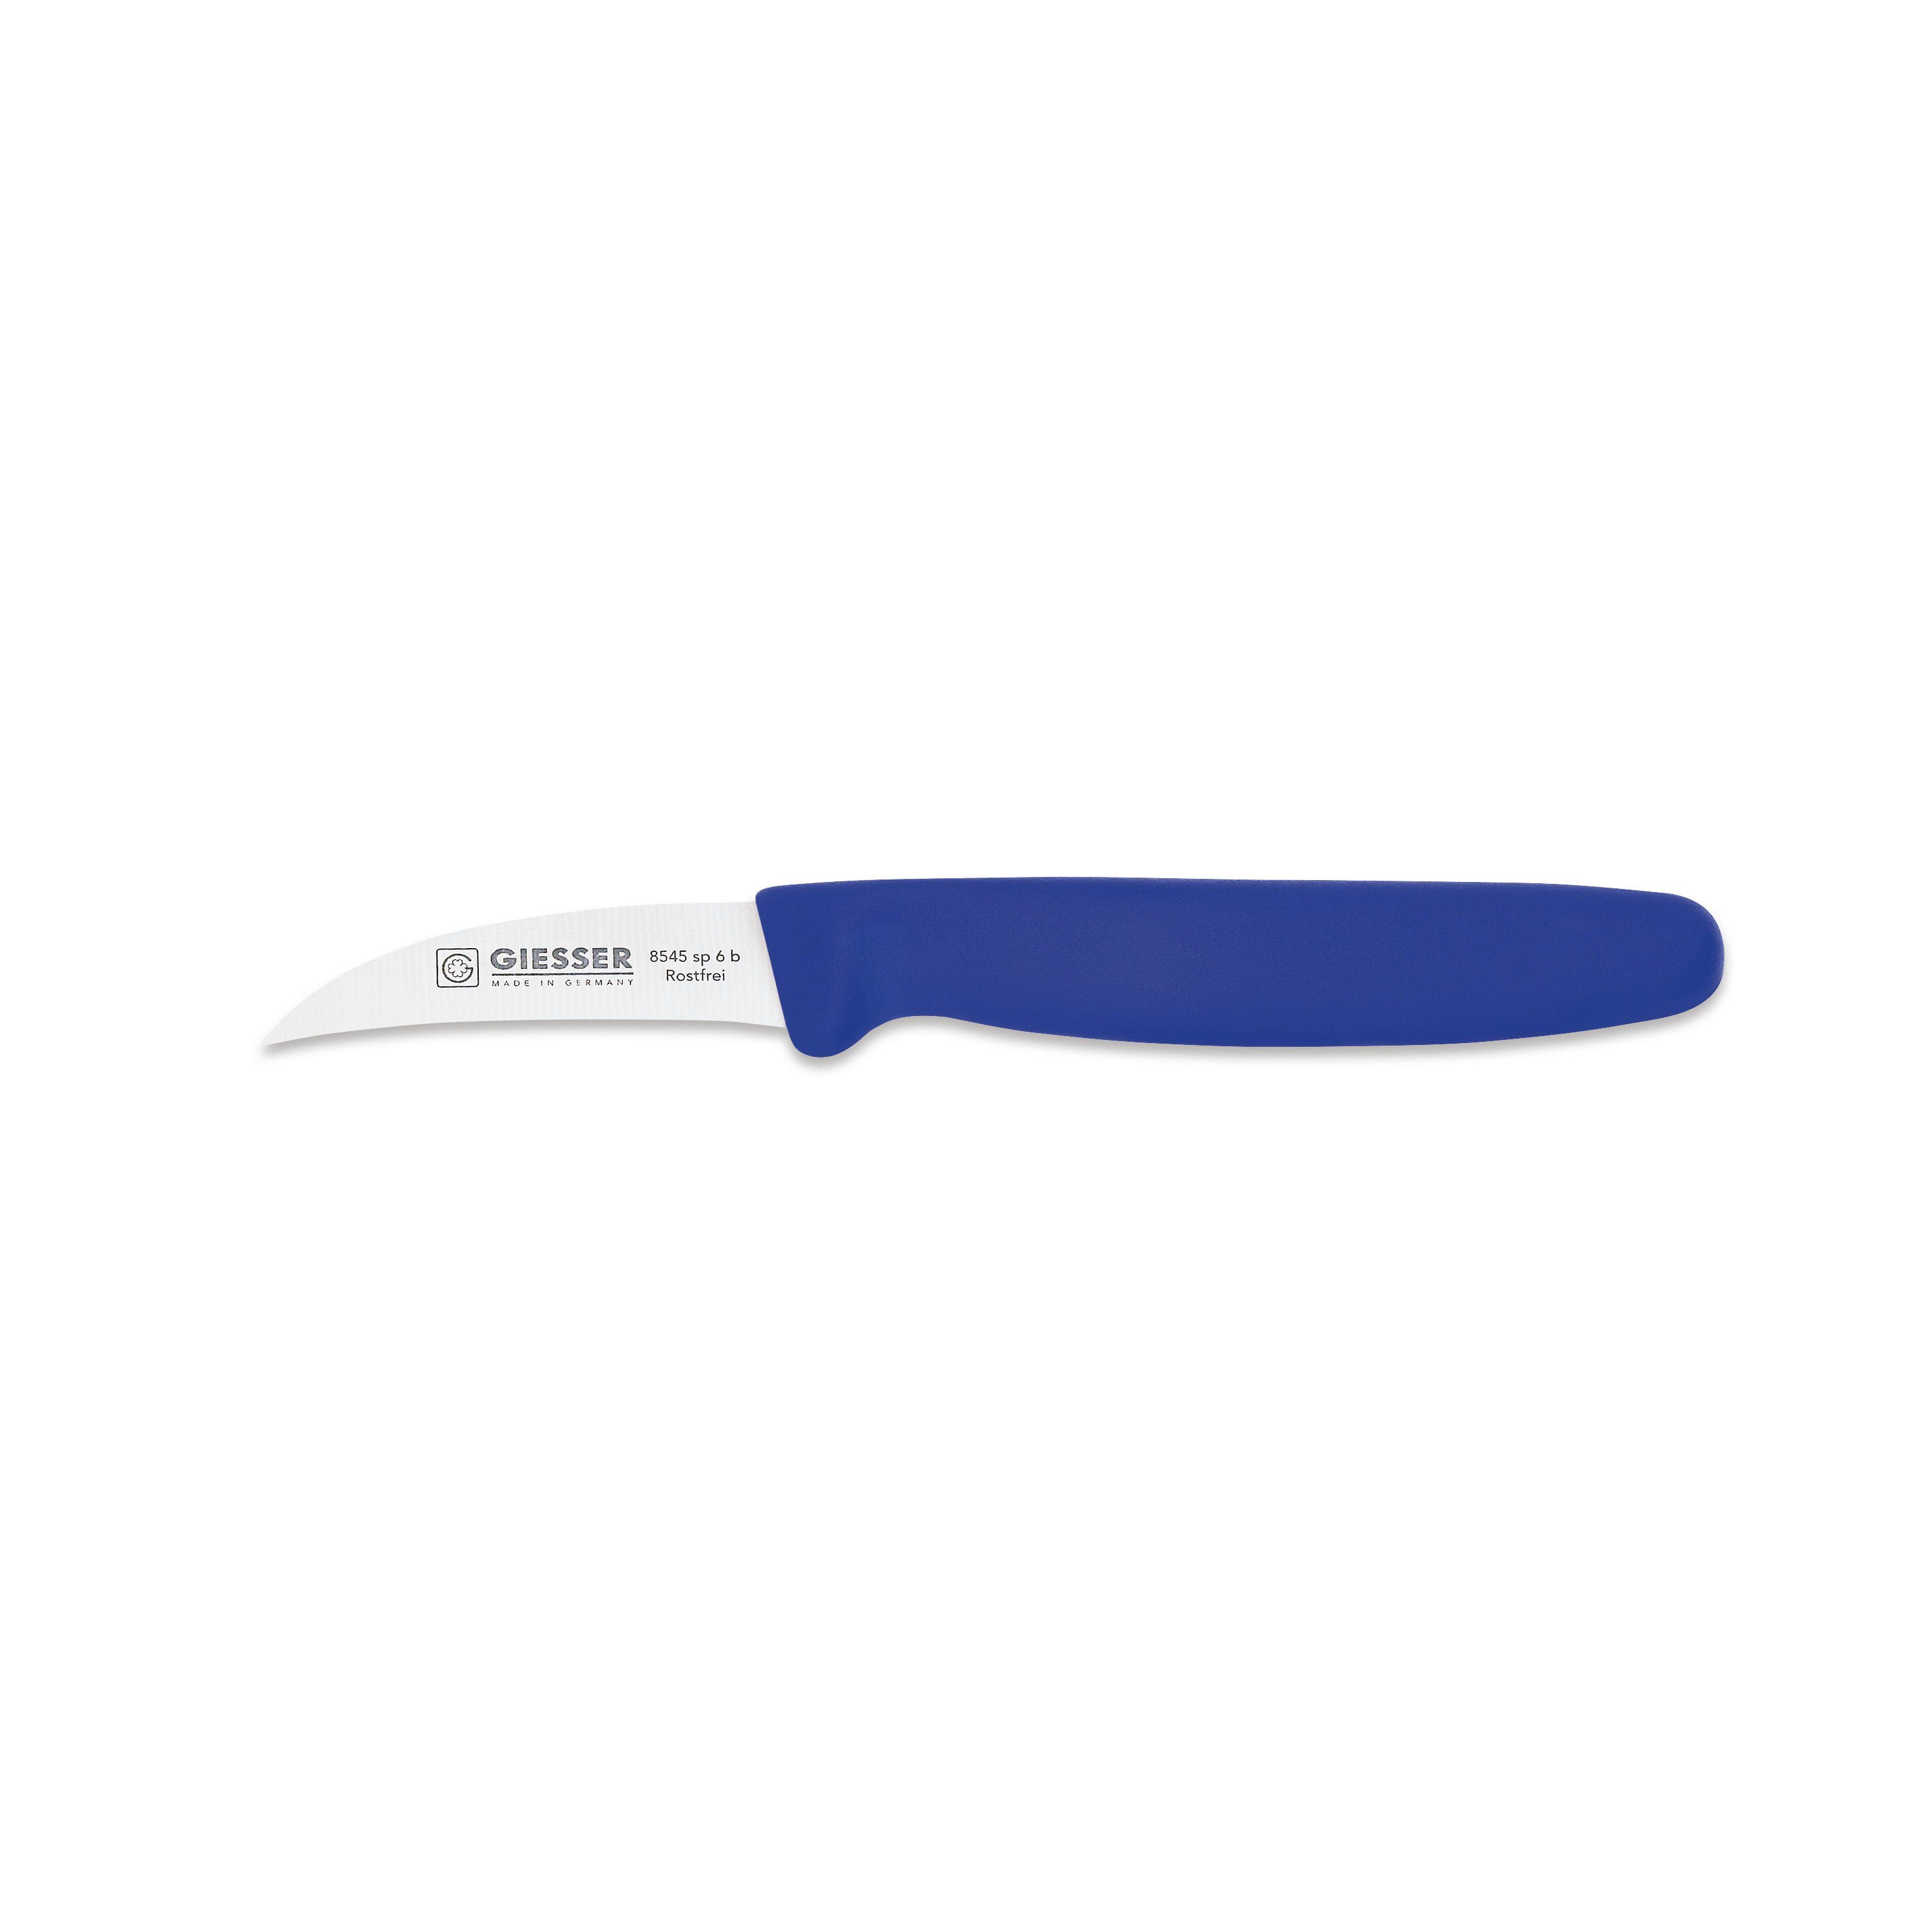 Hohle-Schneide Messer Gemüsemesser Schälmesser Handabzug, sp Klinge blau cm Giesser 6 8545 6,